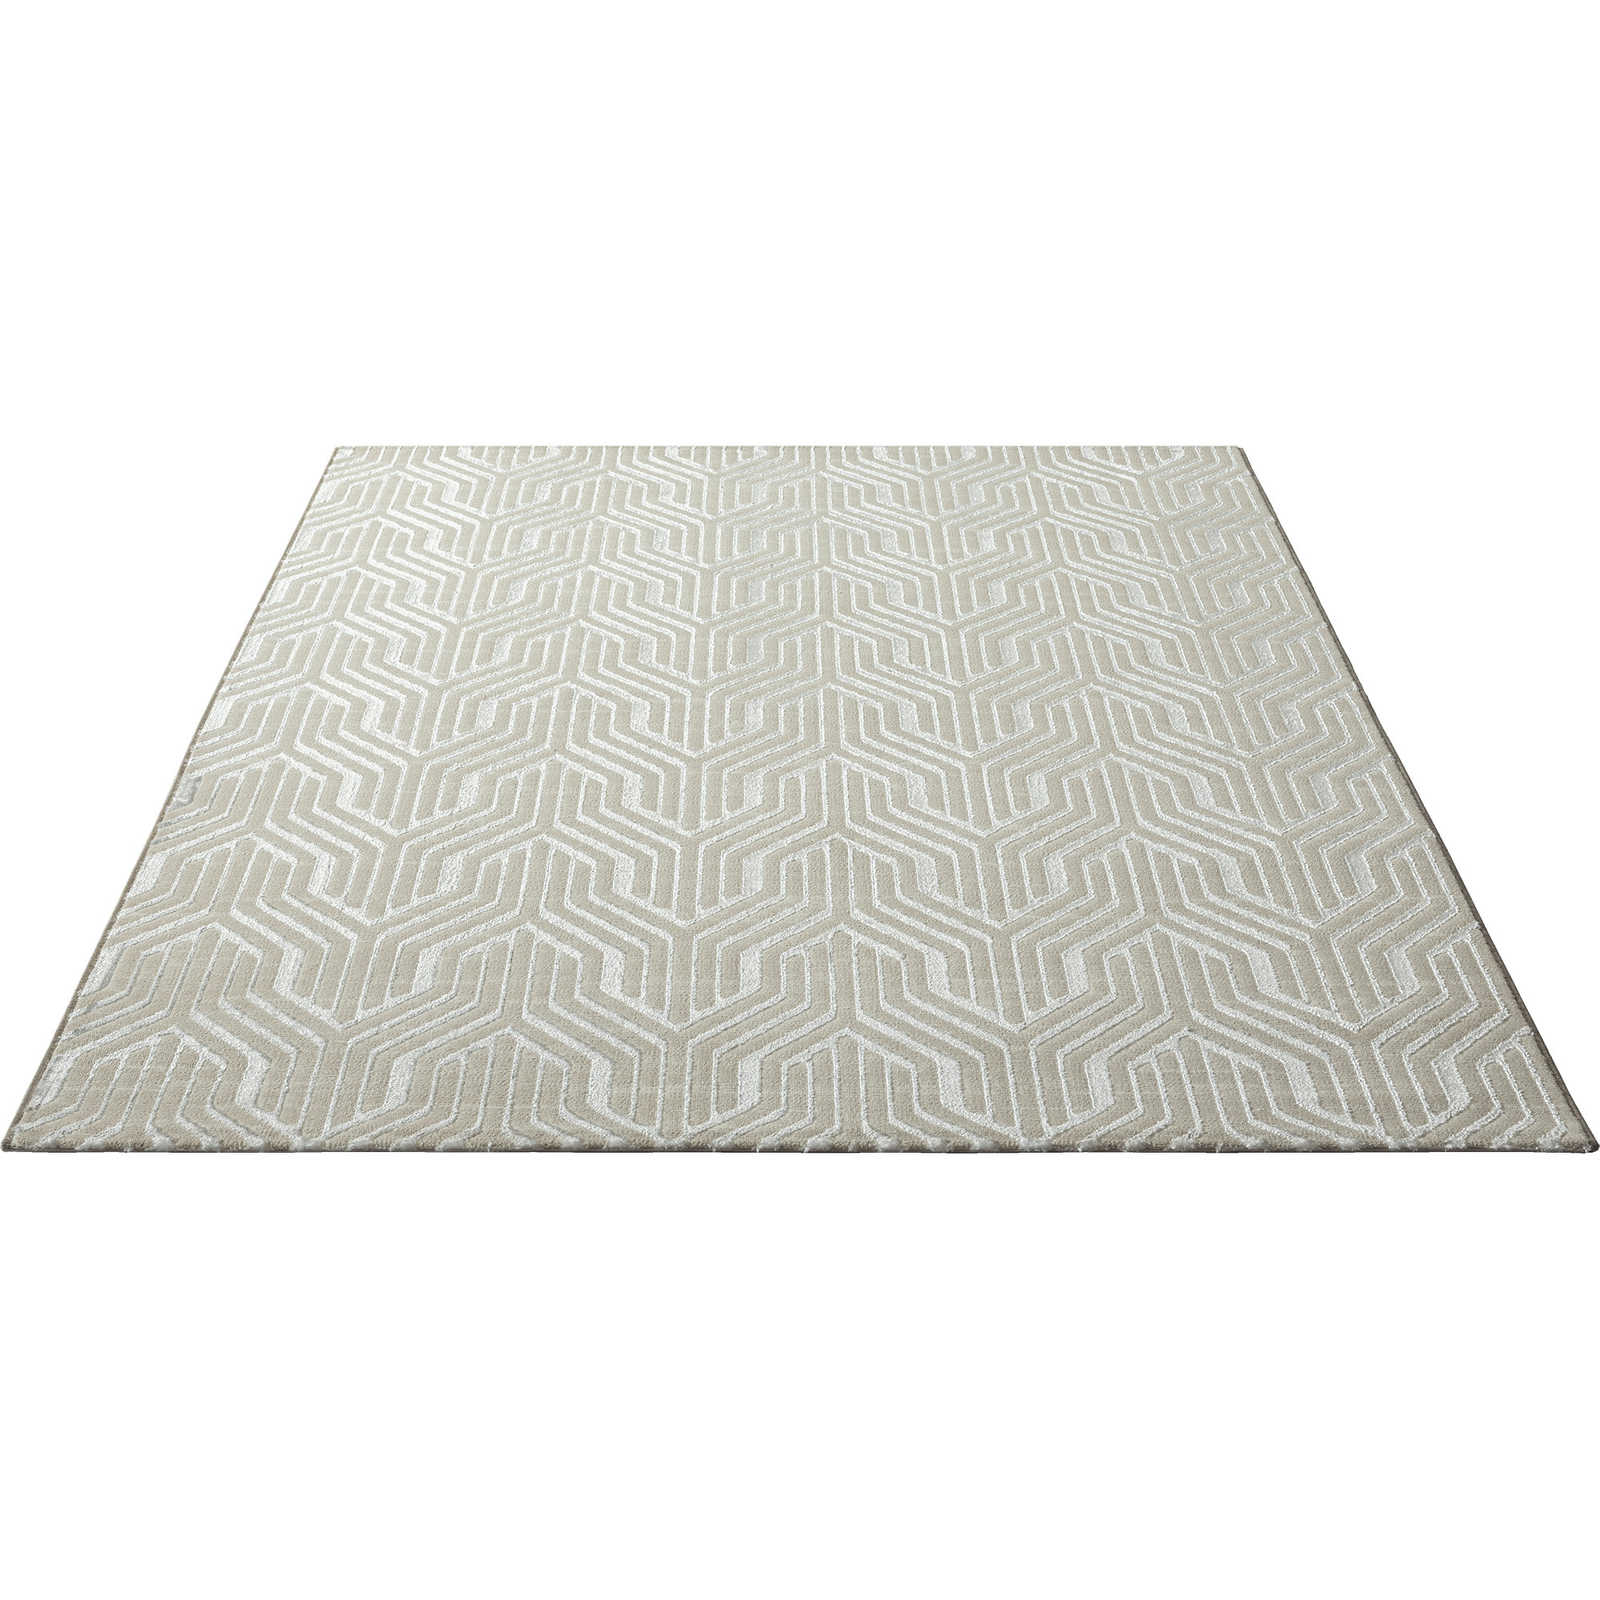 Zachtpolig tapijt in crème - 290 x 200 cm
